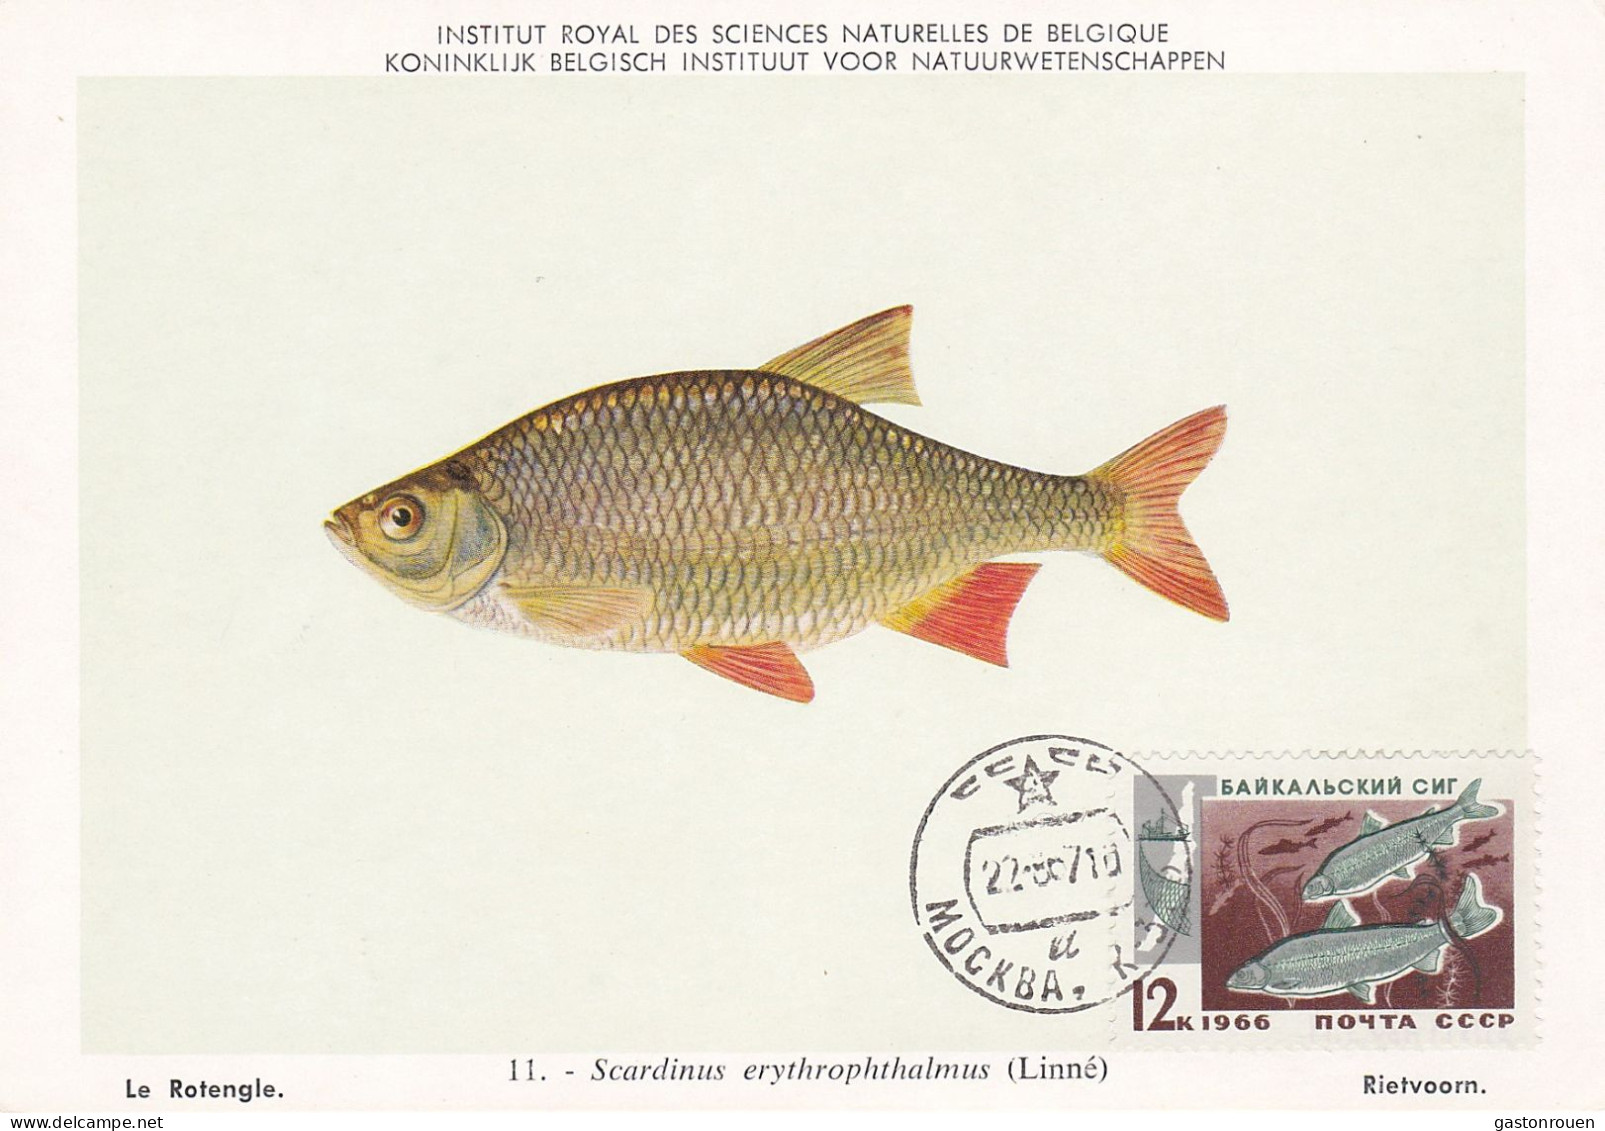 Carte Maximum URSS Russie Russia Poisson Fish 6610 - Cartes Maximum